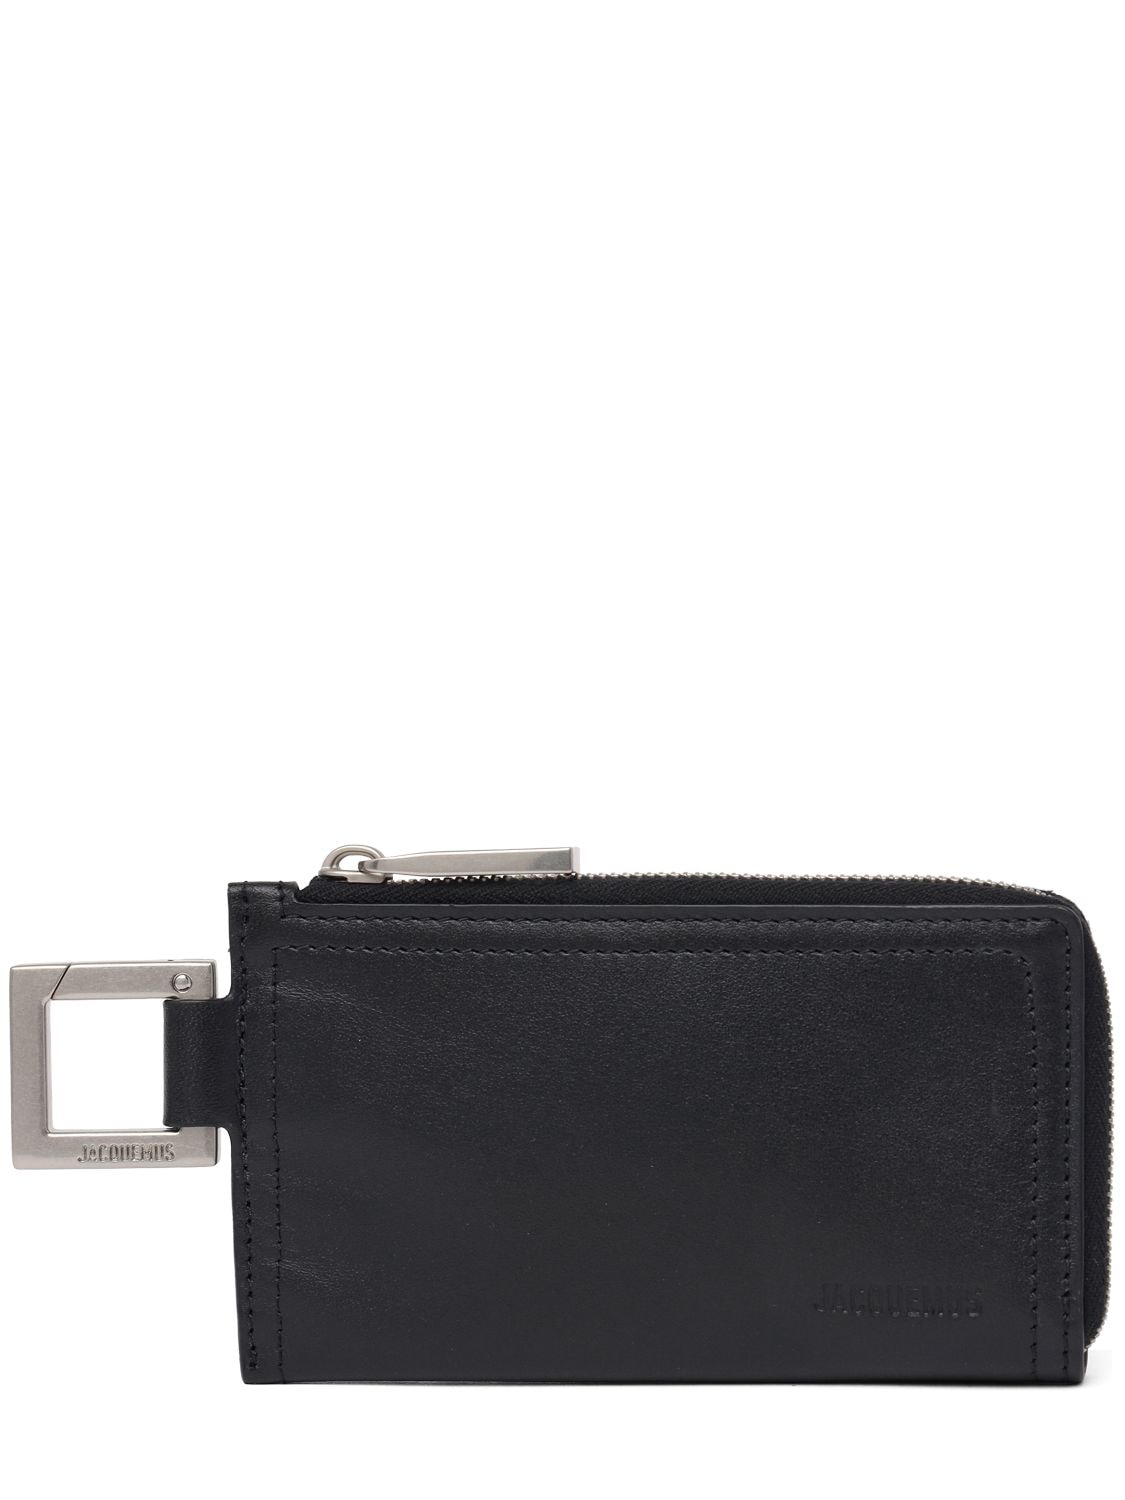 Jacquemus Le Porte-zippé Cuerda Leather Wallet In Black